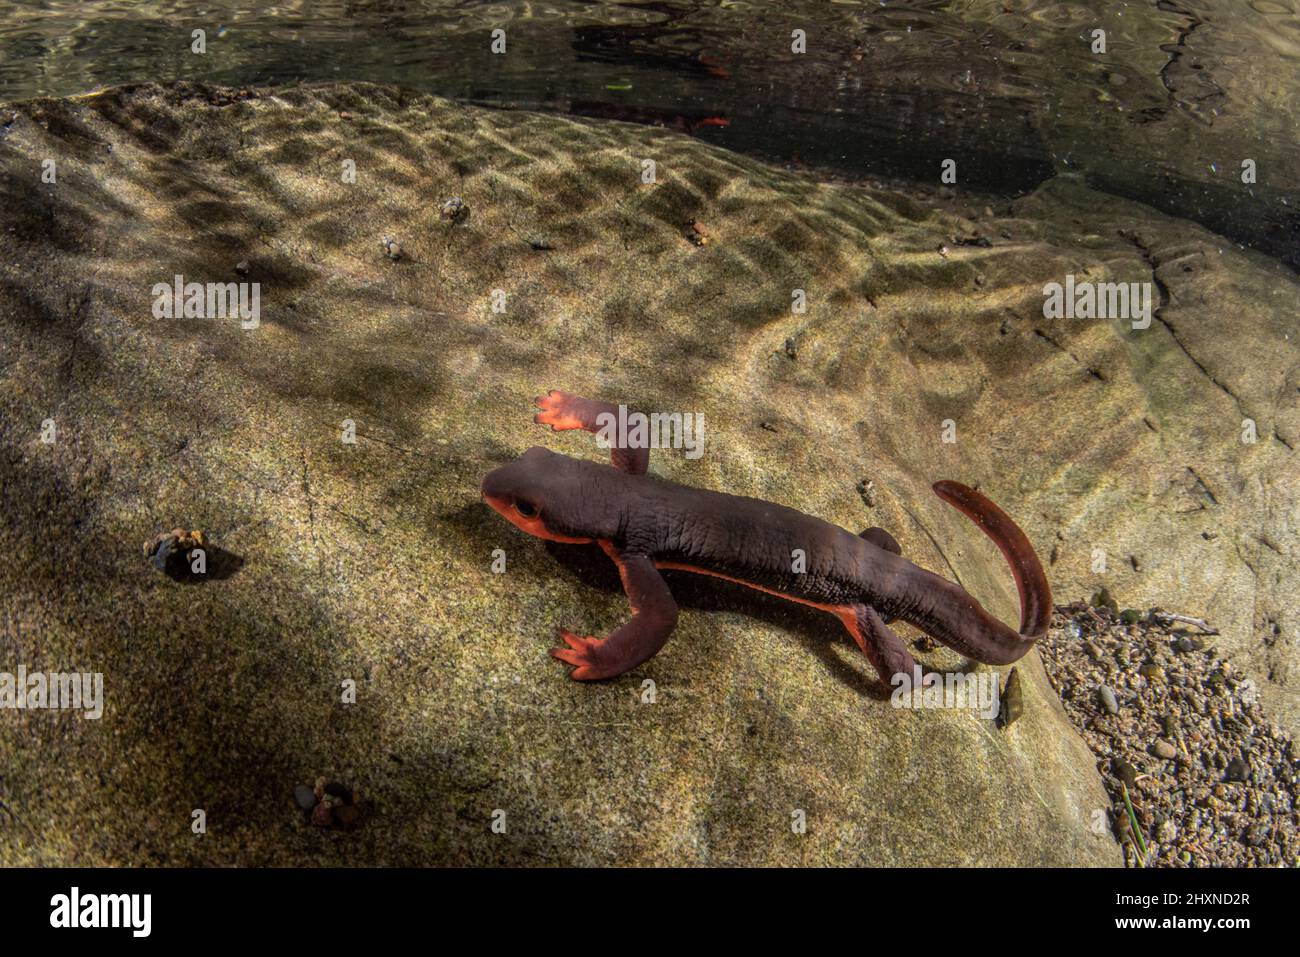 Le nouveau-dent à ventre rouge (Taricha rivularis) salamandre aquatique du nord de la Californie, ils vivent dans des cours d'eau propres. Banque D'Images